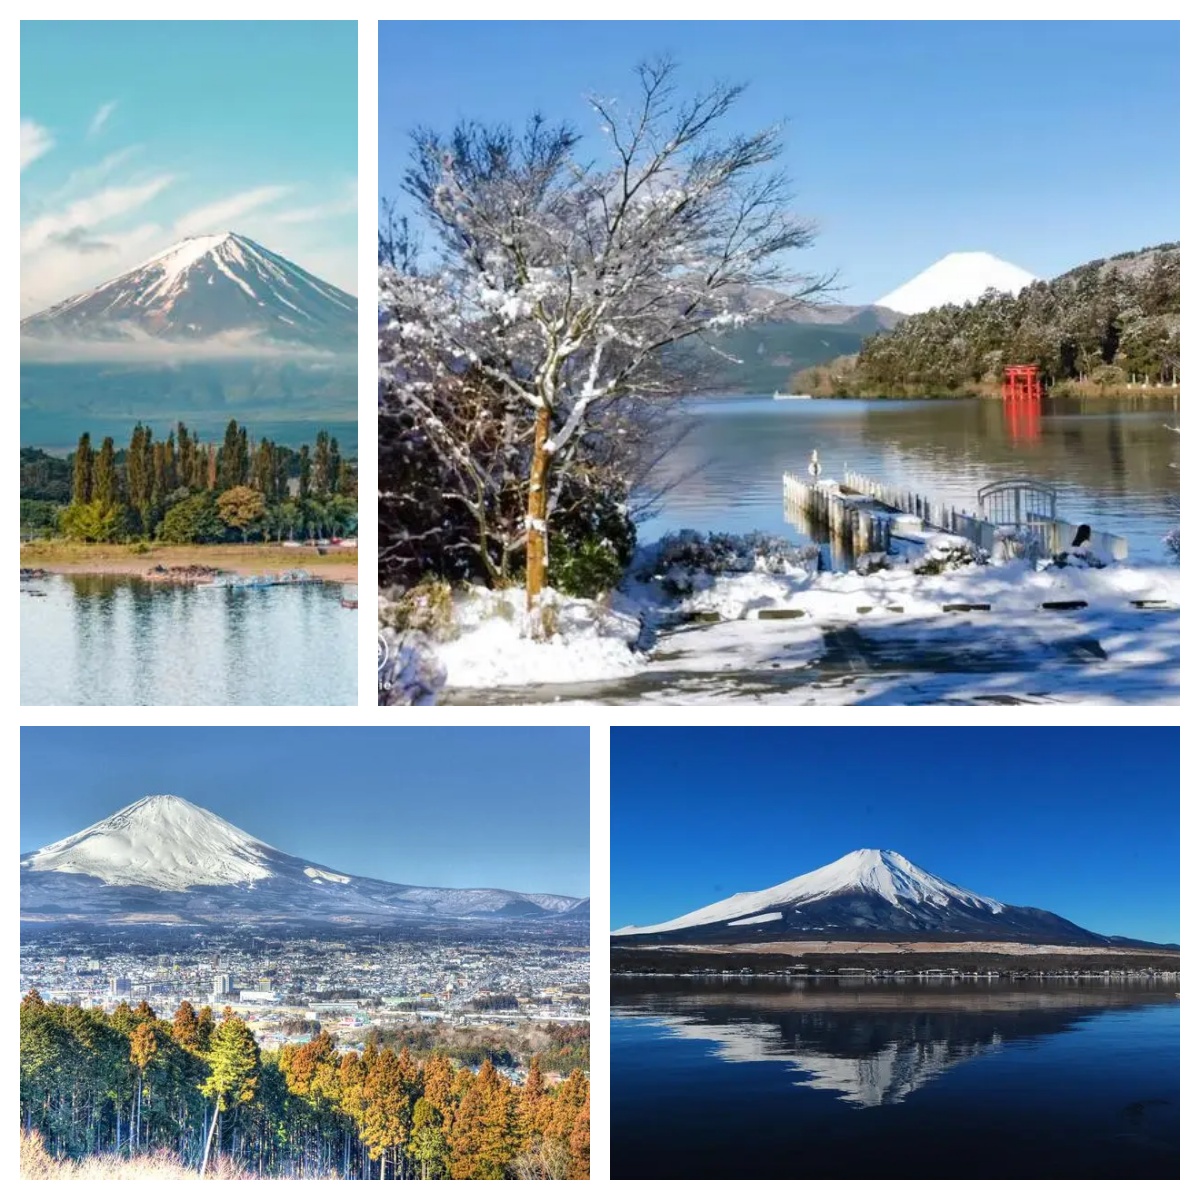 日本箱根·芦之湖与富士山雪顶的绝佳观赏地